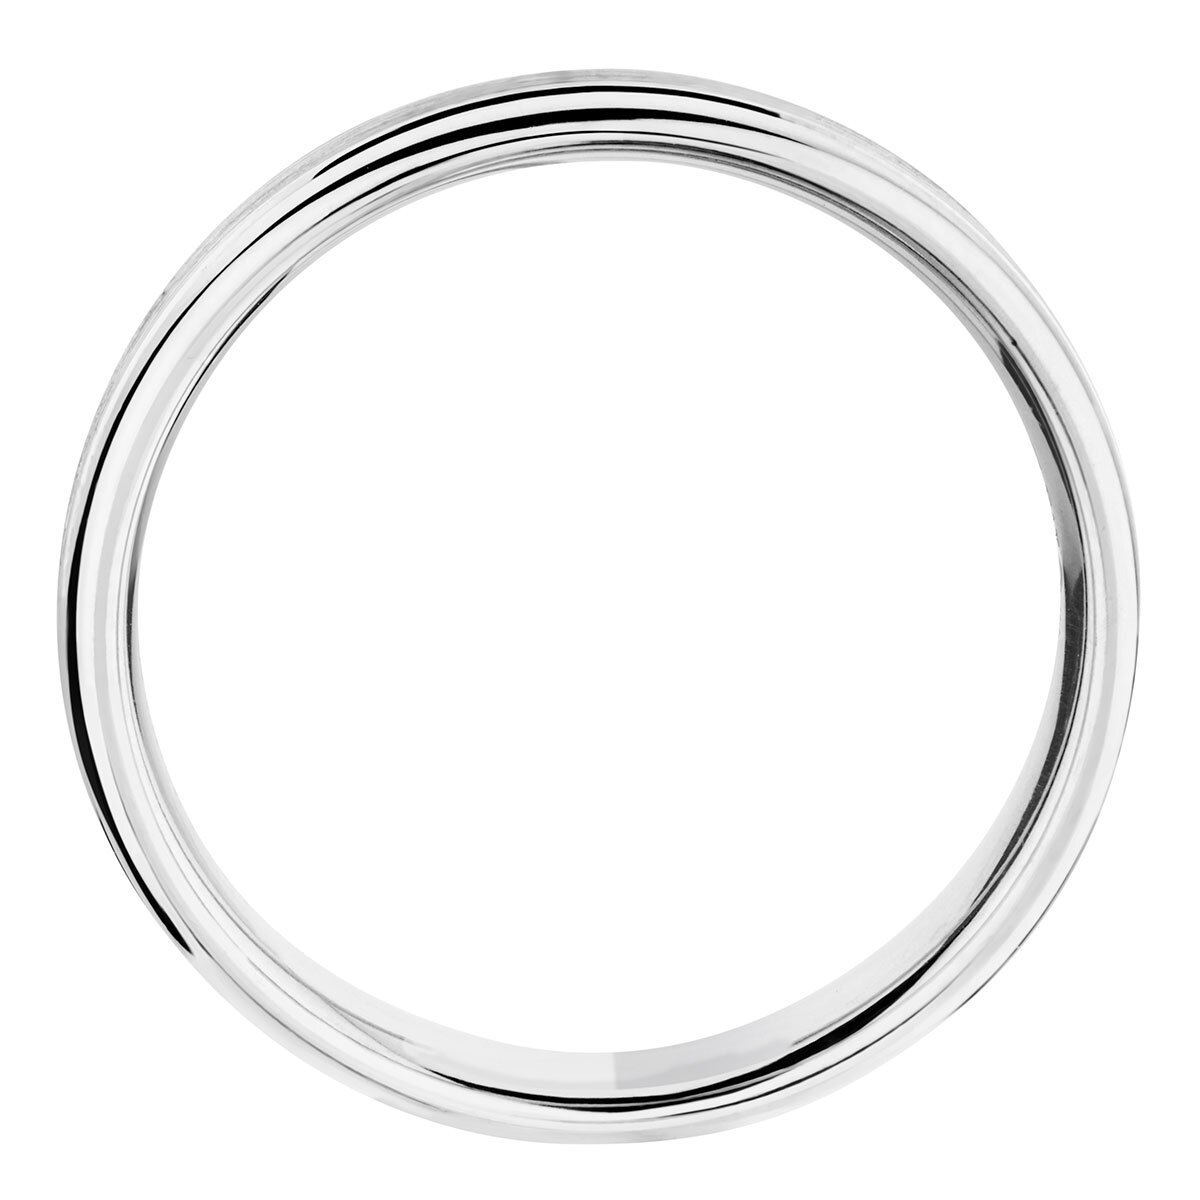 5.0mm Luxury Court Wedding Ring, Satin & Polished Platinum